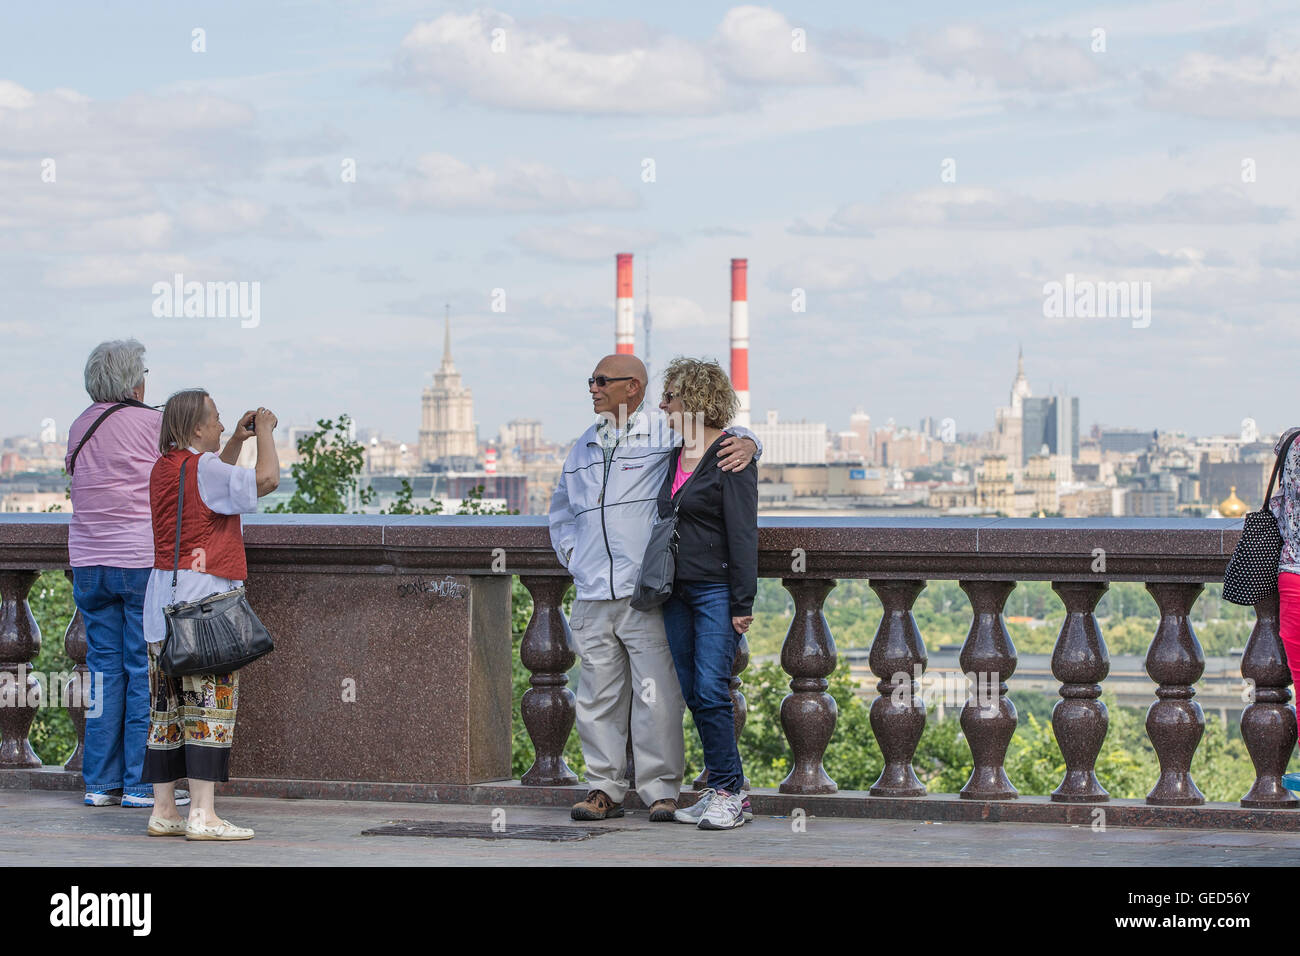 Les touristes sur une plate-forme d'observation sur le mont des Moineaux, Moscou, Russie. Banque D'Images